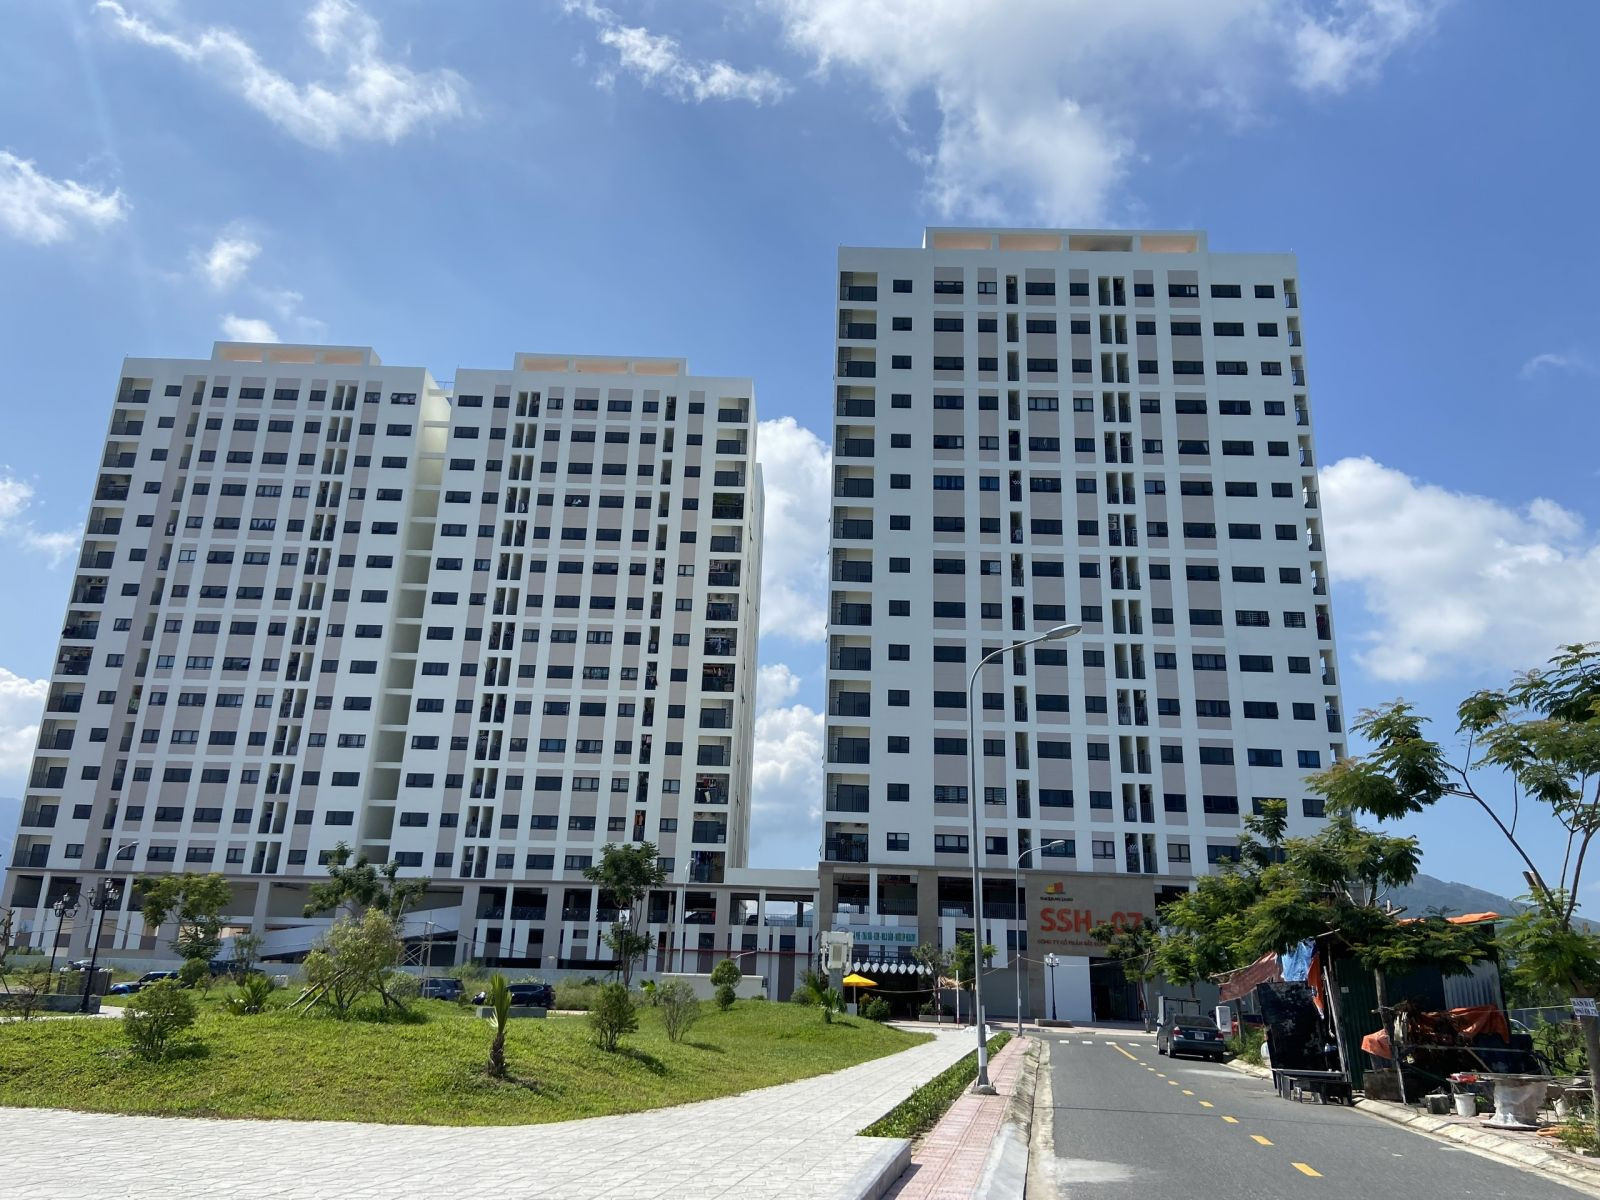 Trước đó, dựa trên thống kê của Sở Xây dựng, tỉnh Khánh Hòa đã hoàn thiện 16 dự án NƠXH có quy mô gần 3.700 căn hộ.